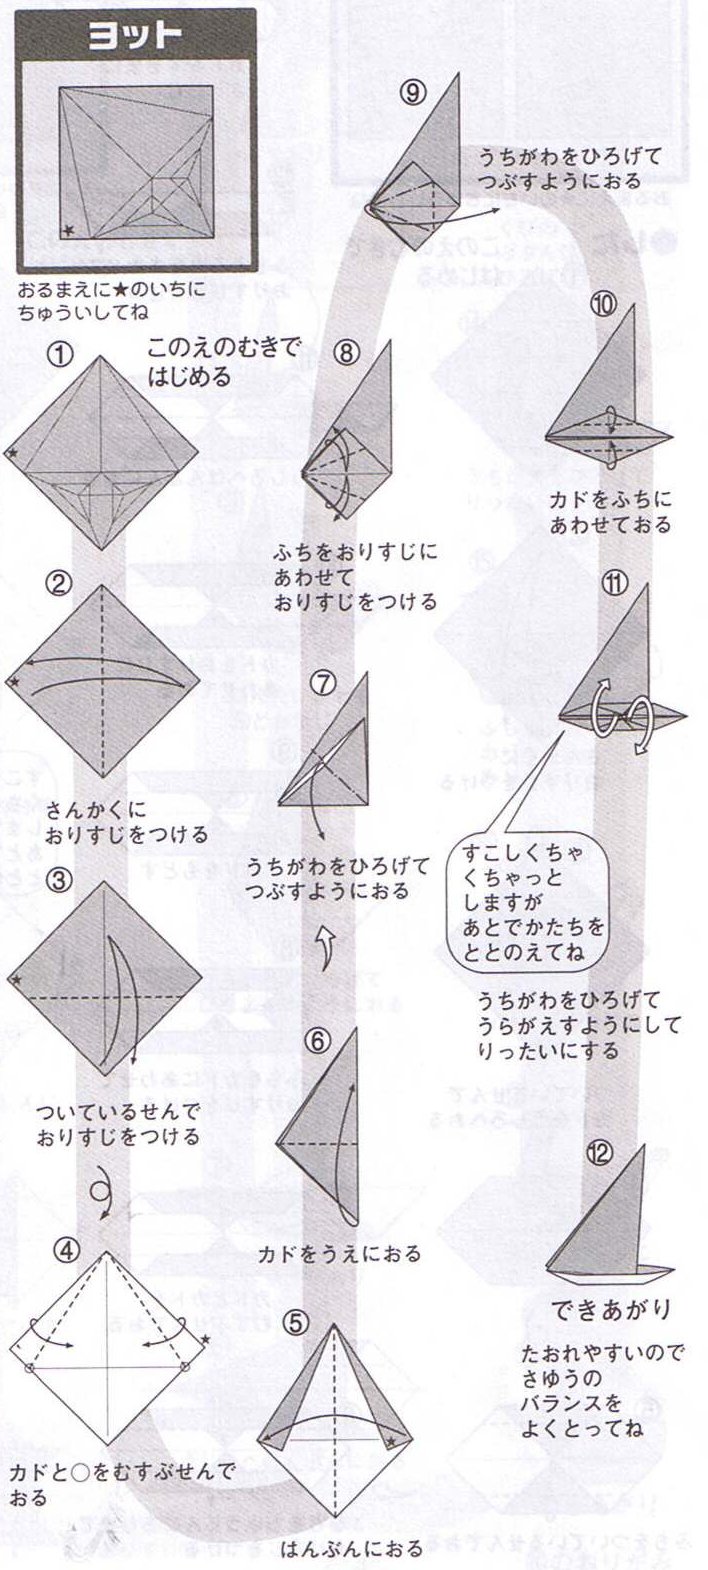 Origami Jpg